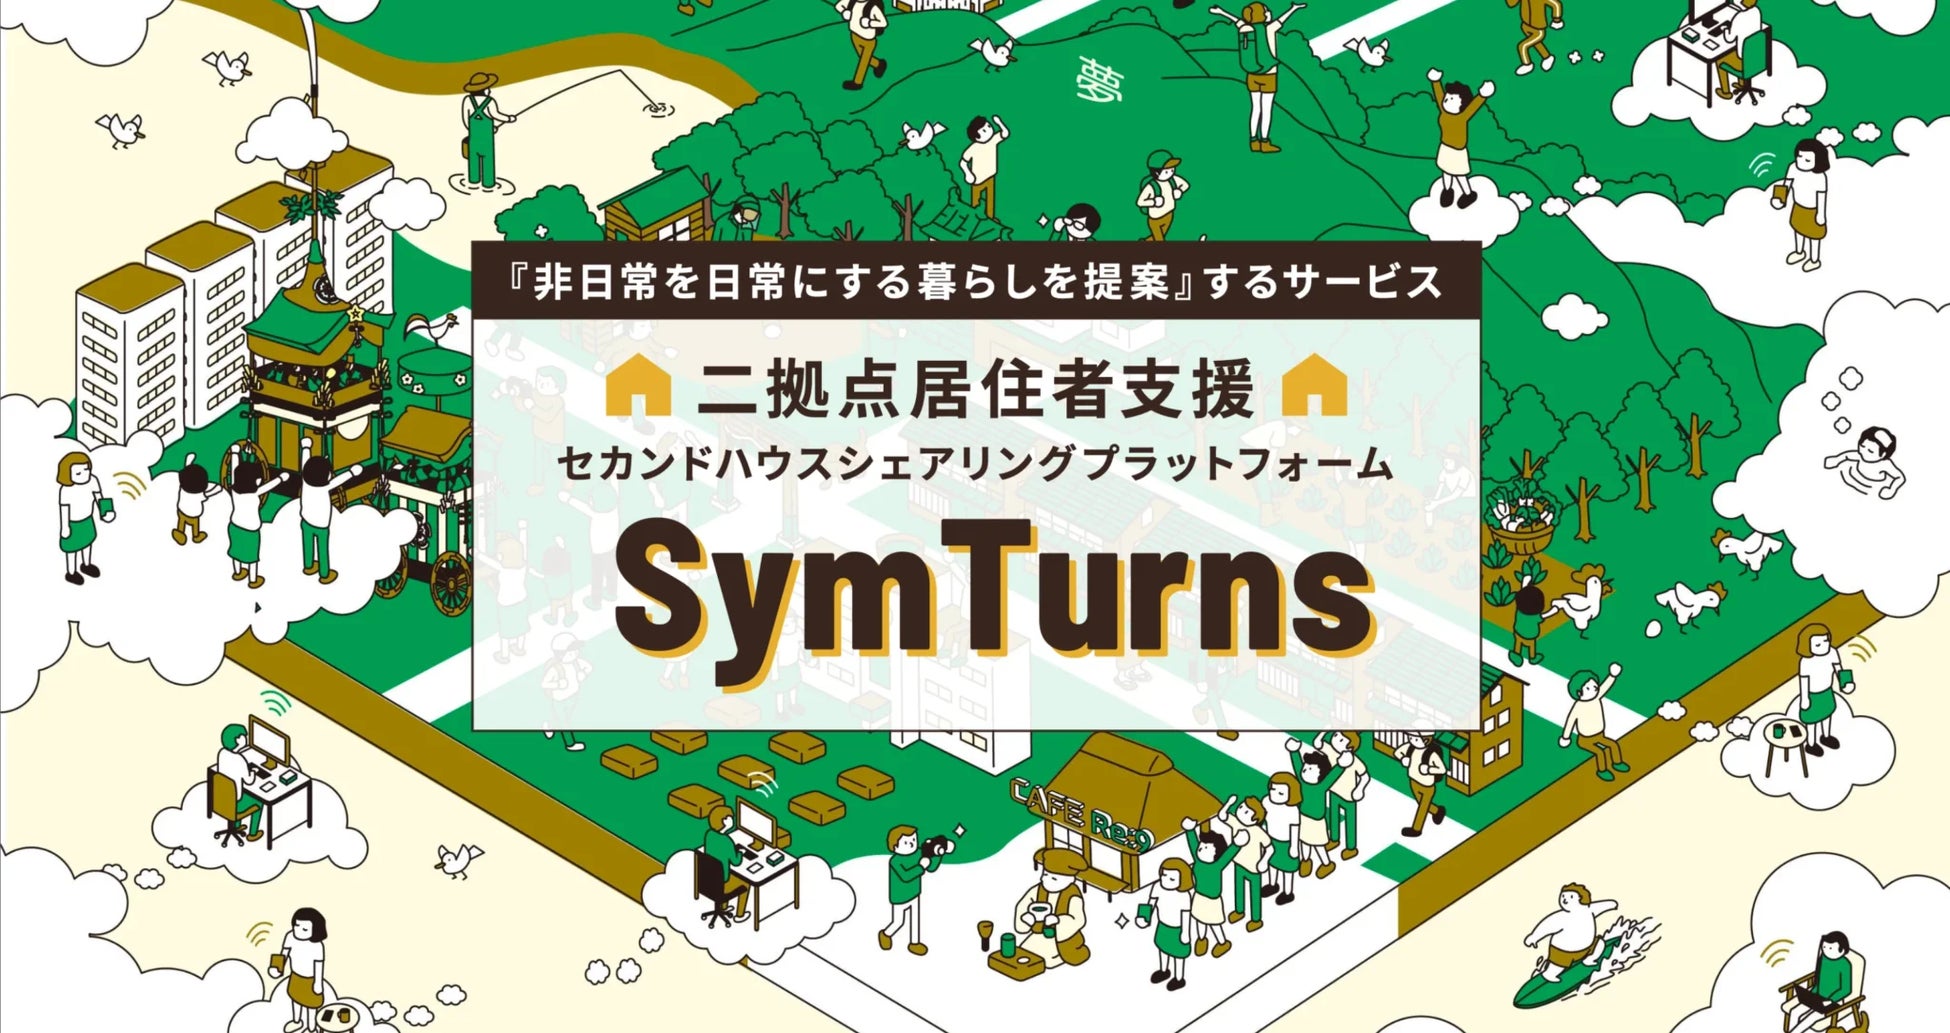 誰でも手軽に二拠点生活を実現できるサービス「SymTurns(シムターンズ)」をリリース。